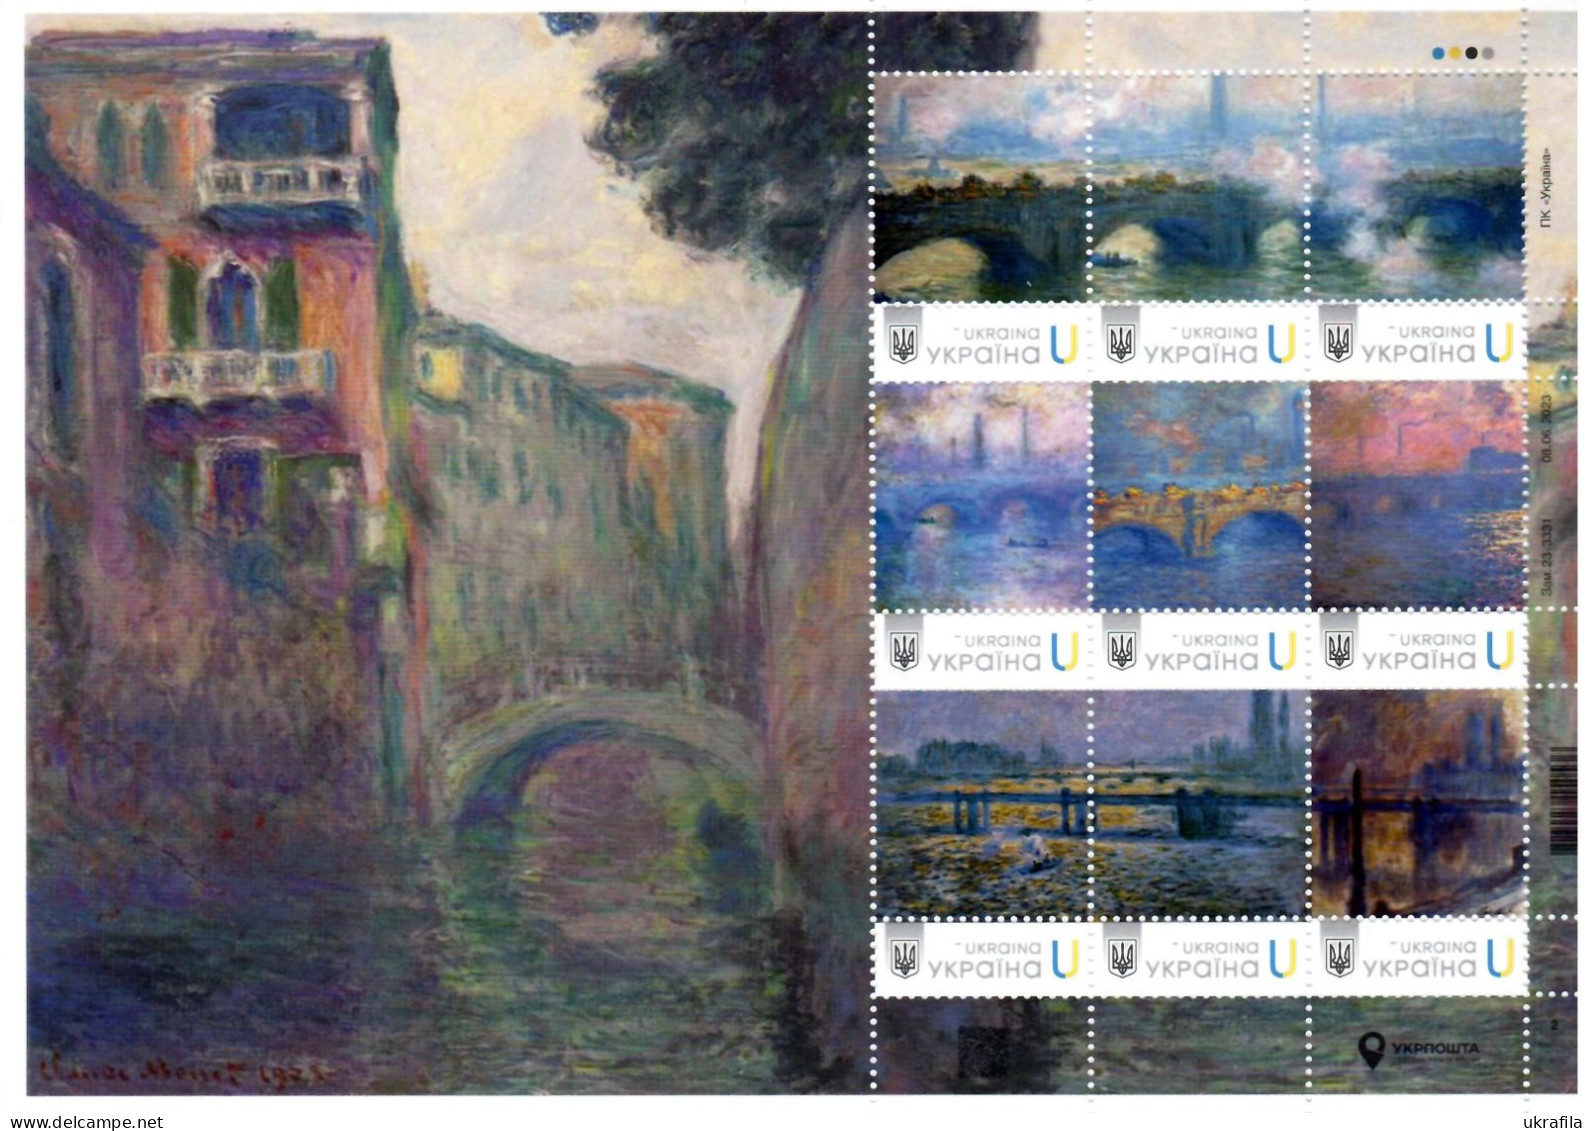 Ukraine 2022, Painting, Impressionists, Claude Monet, Sheetlet Of 9v - Ukraine